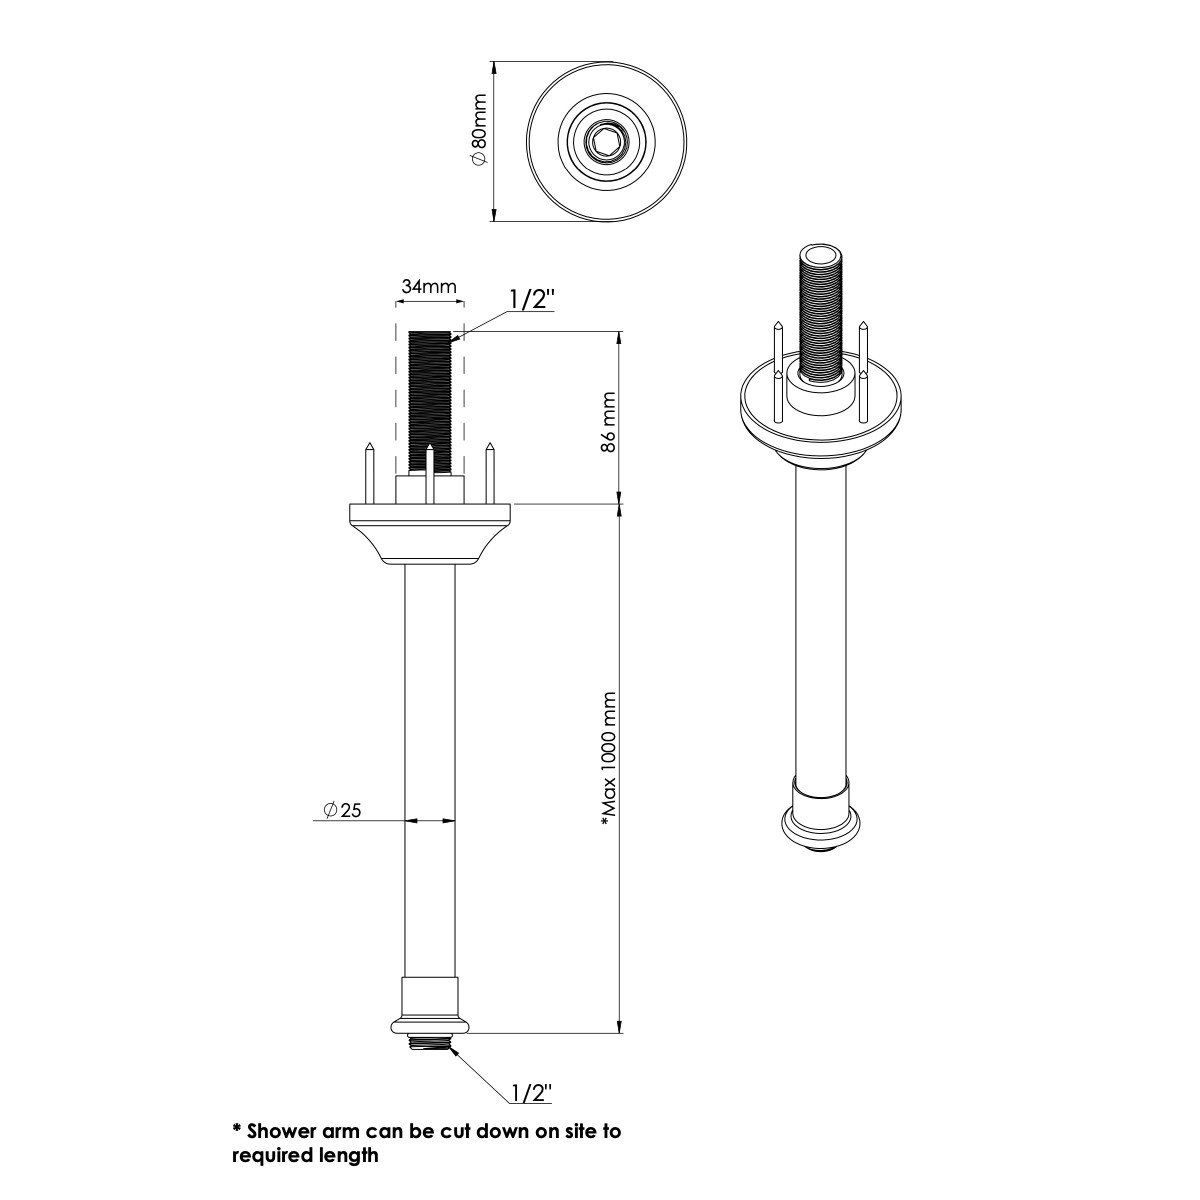  Vòi sen âm trần điều chỉnh nhiệt độ cổ điển bằng đồng, bát sen Ø300mm Drumlea - Shower Ceiling 